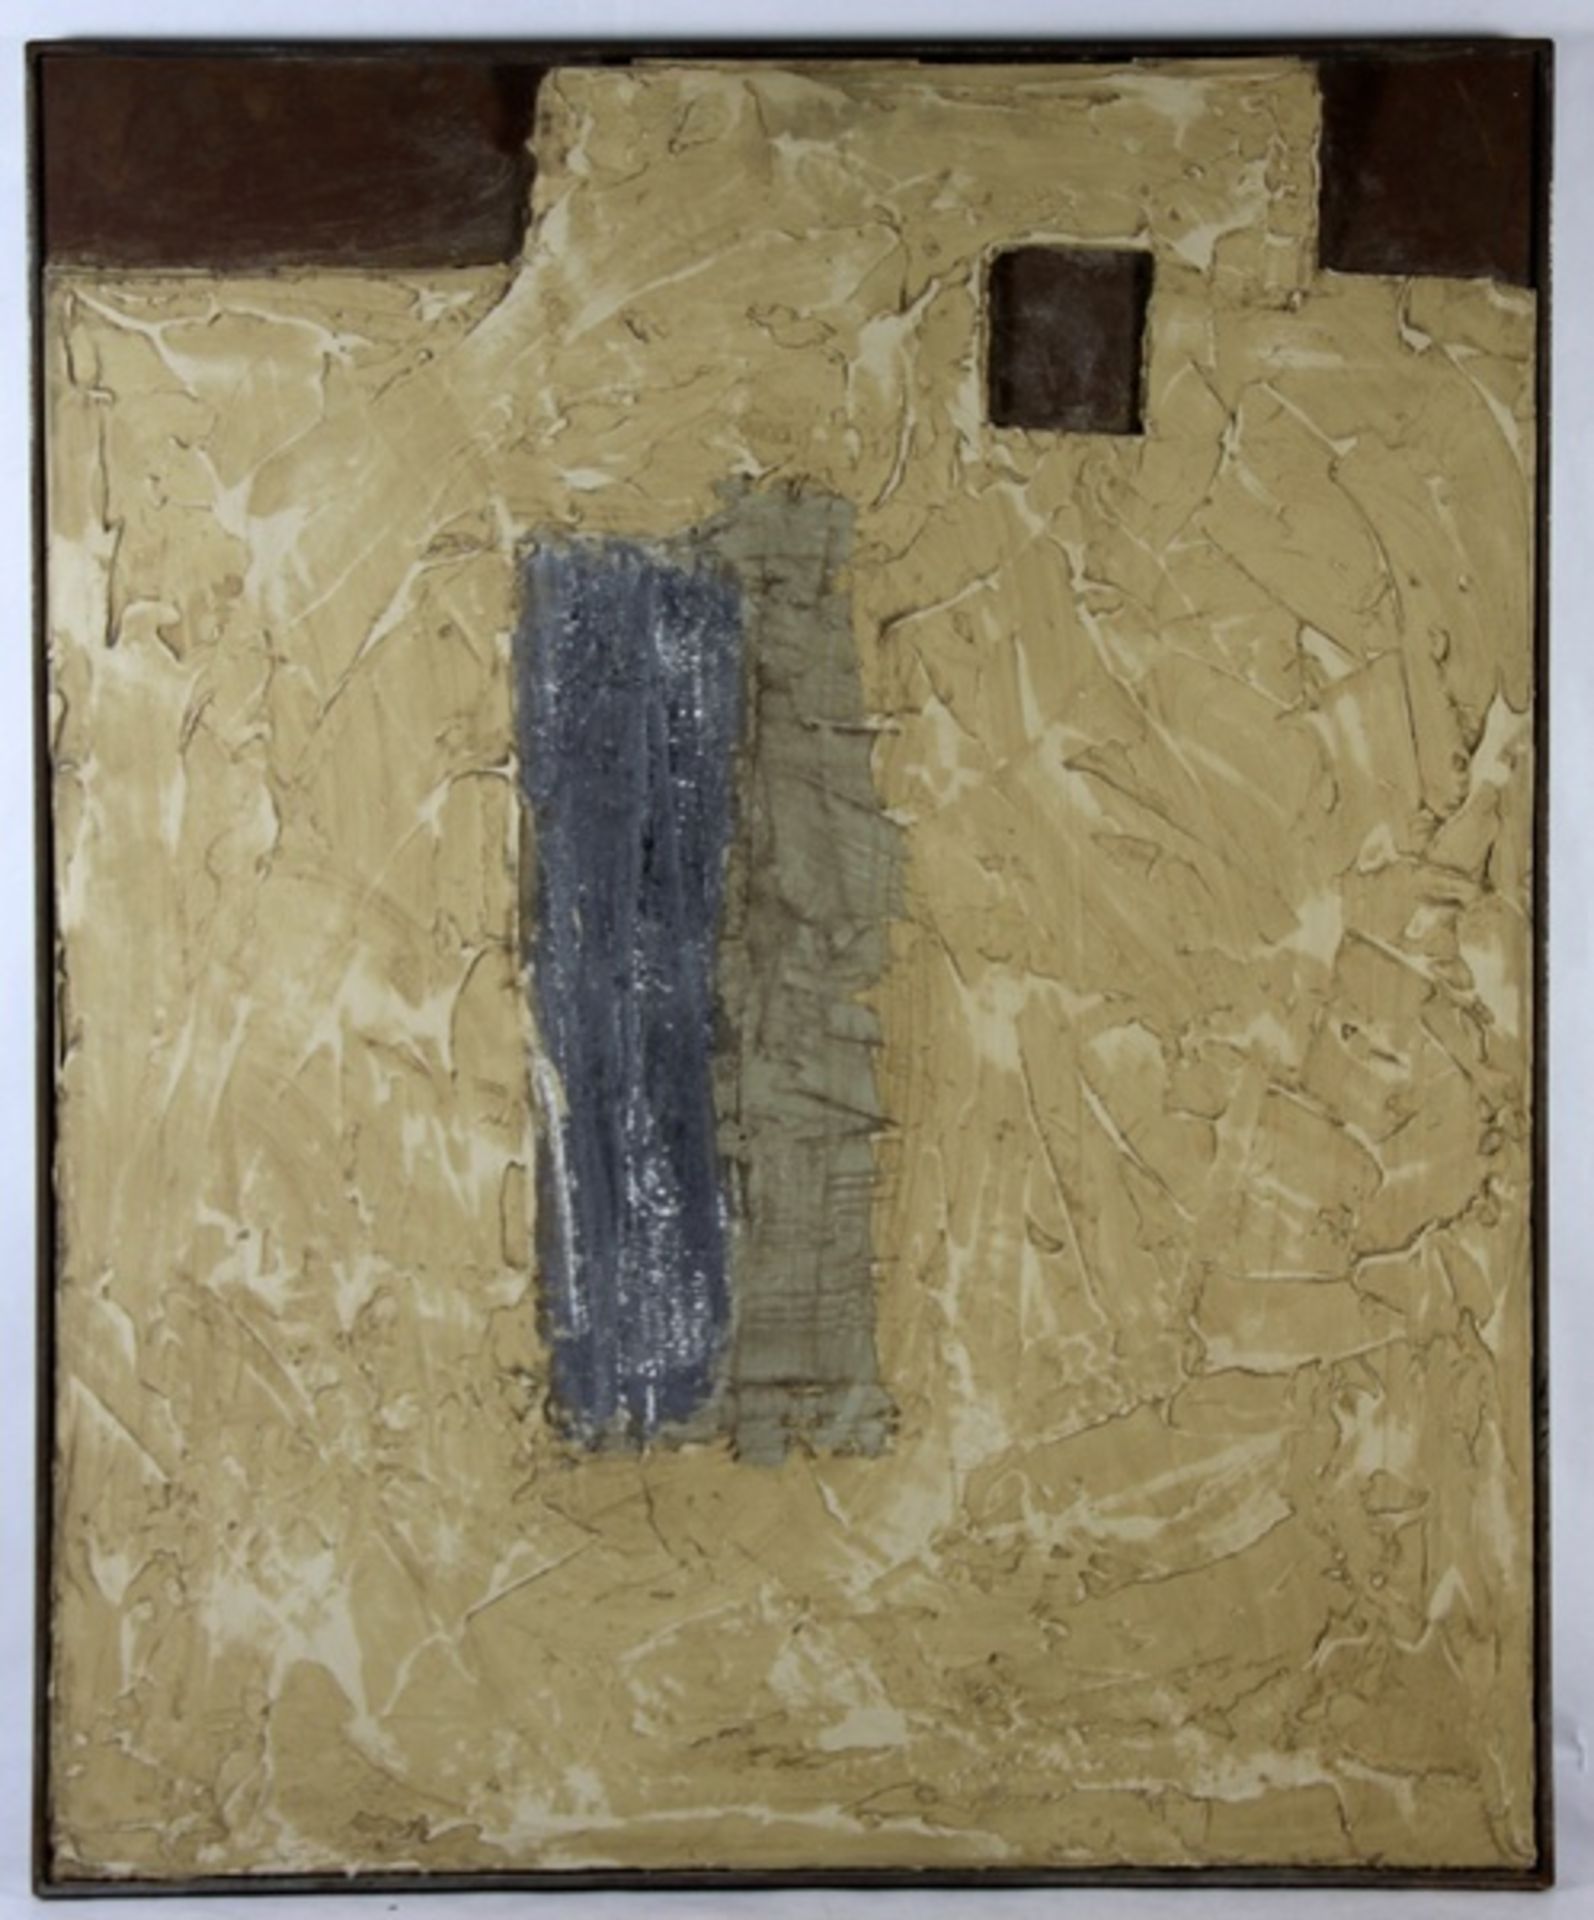 Lovison, Tonygeb. 1949, Paesaggio Urbano, Materialbild auf Metallplatte, haptischer Farbauftrag